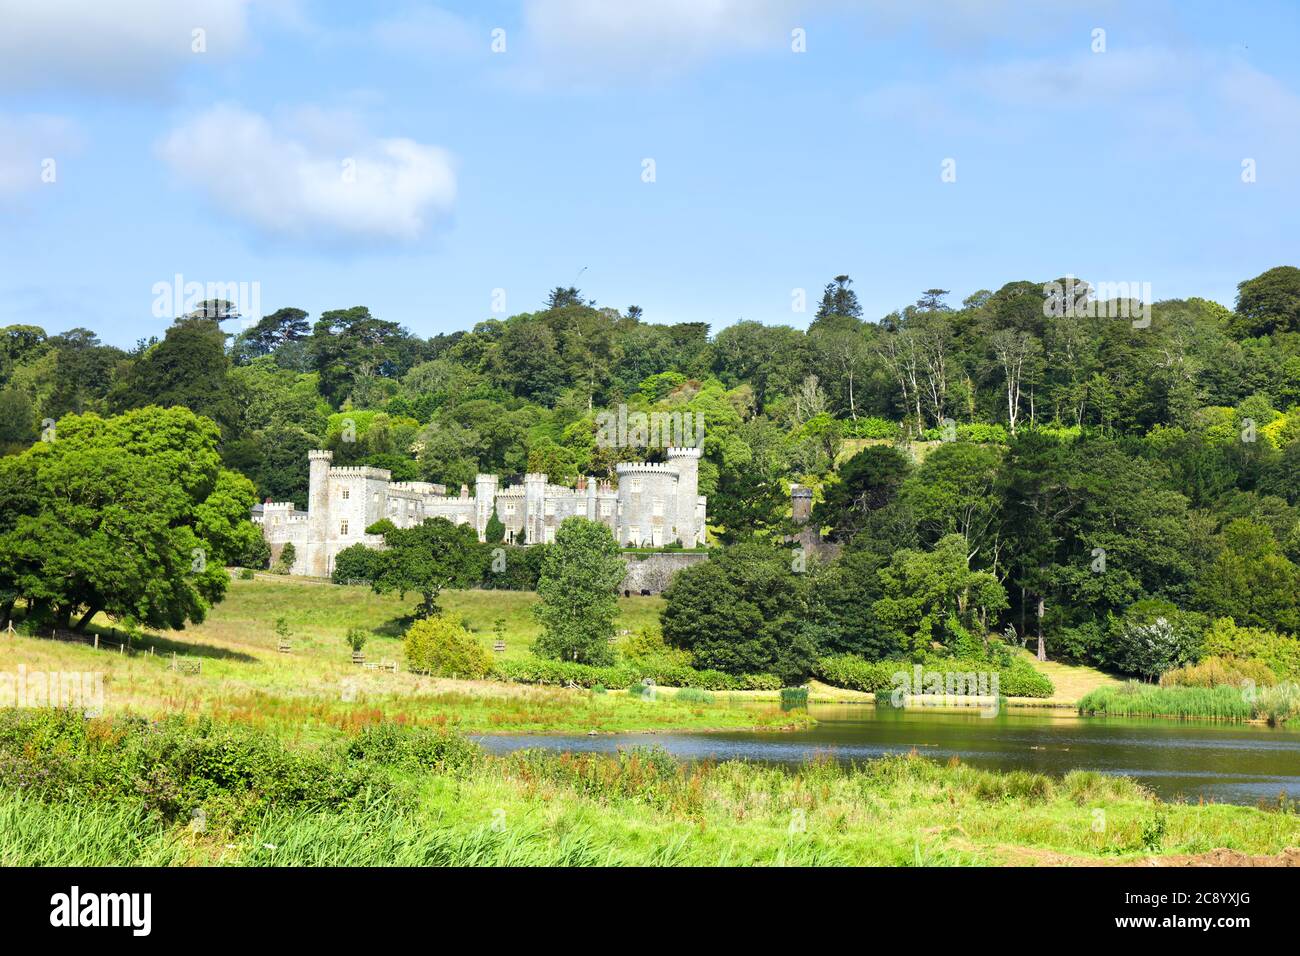 Panoramablick auf Caerhays Castle, ein Herrenhaus im Süden von St. Michael in der grünen Landschaft. St. Austell, Cornwall, England, Großbritannien. Stockfoto